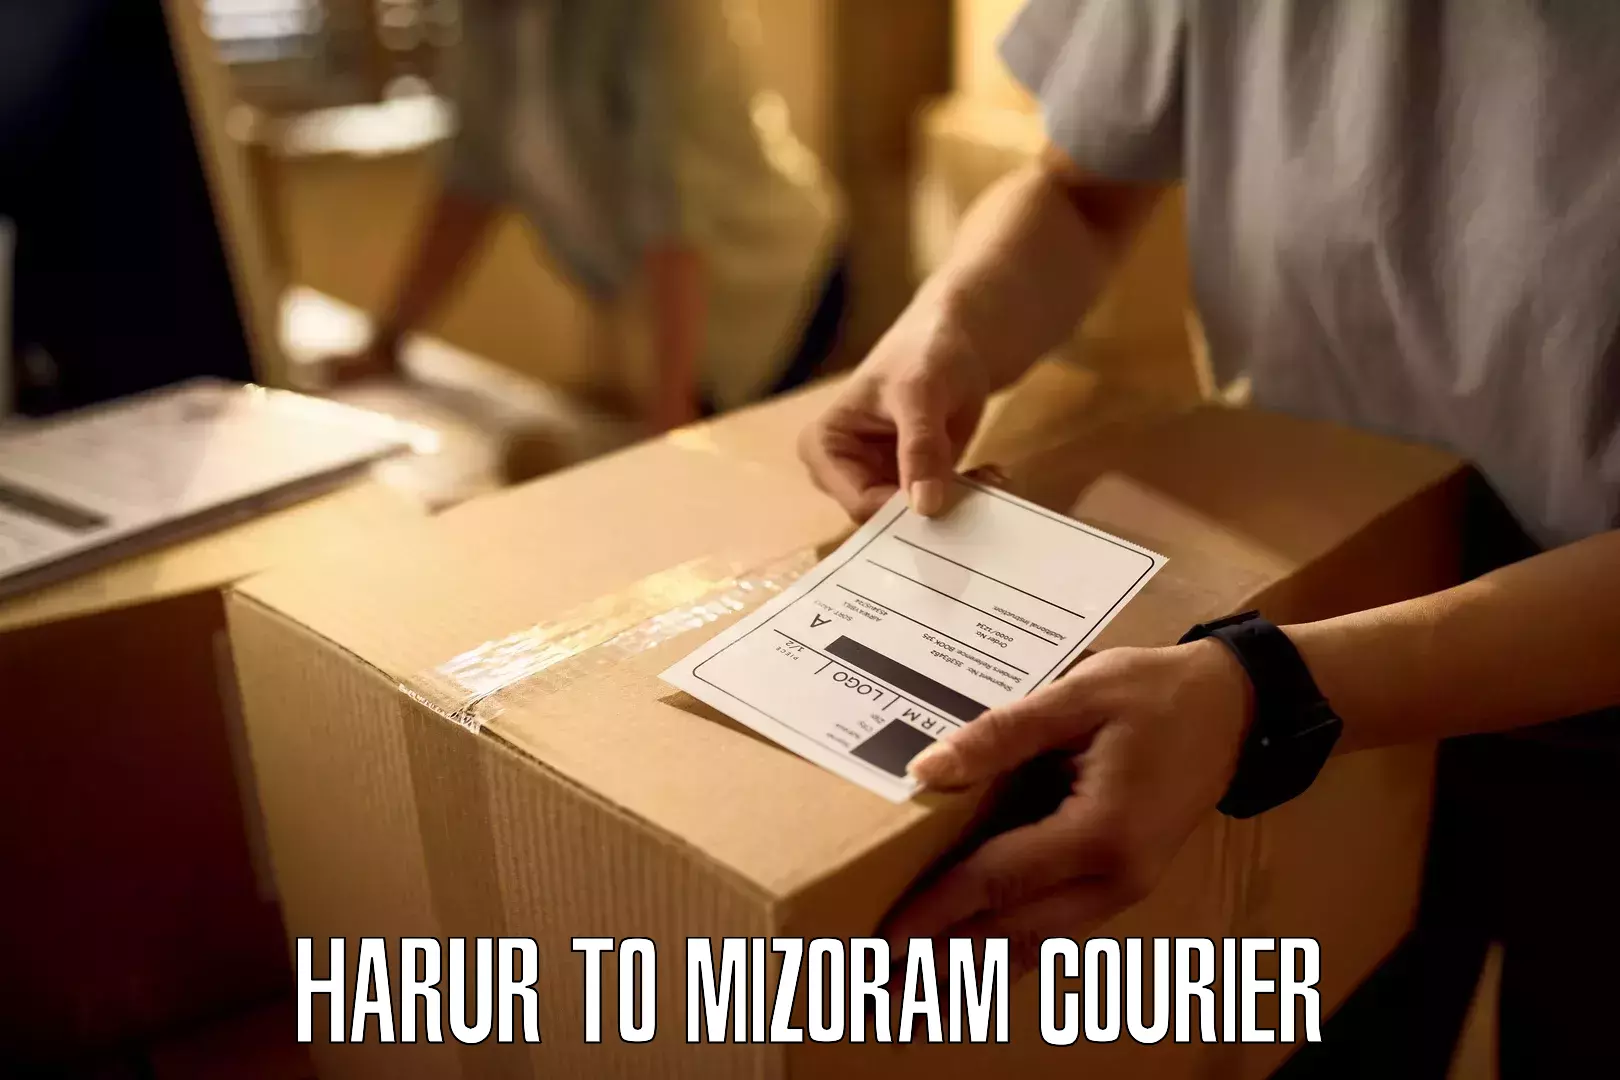 Local delivery service Harur to Serchhip